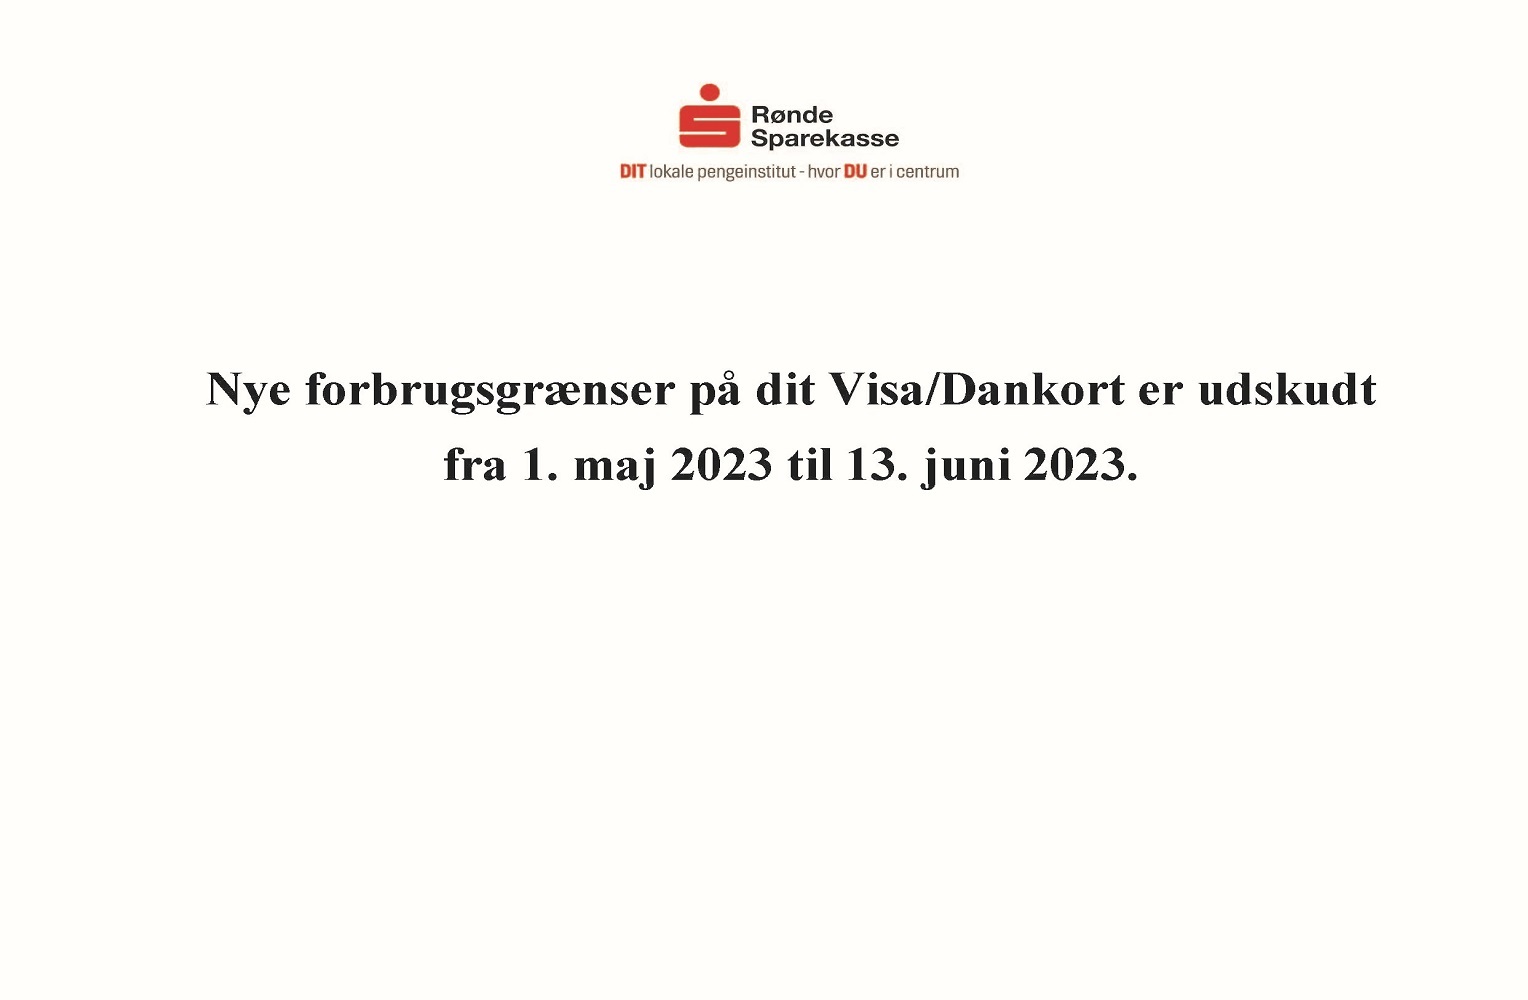 Nye forbrugsgrænser Visa Dankort udskudt til 13. juni 2023 slider (2) (002)